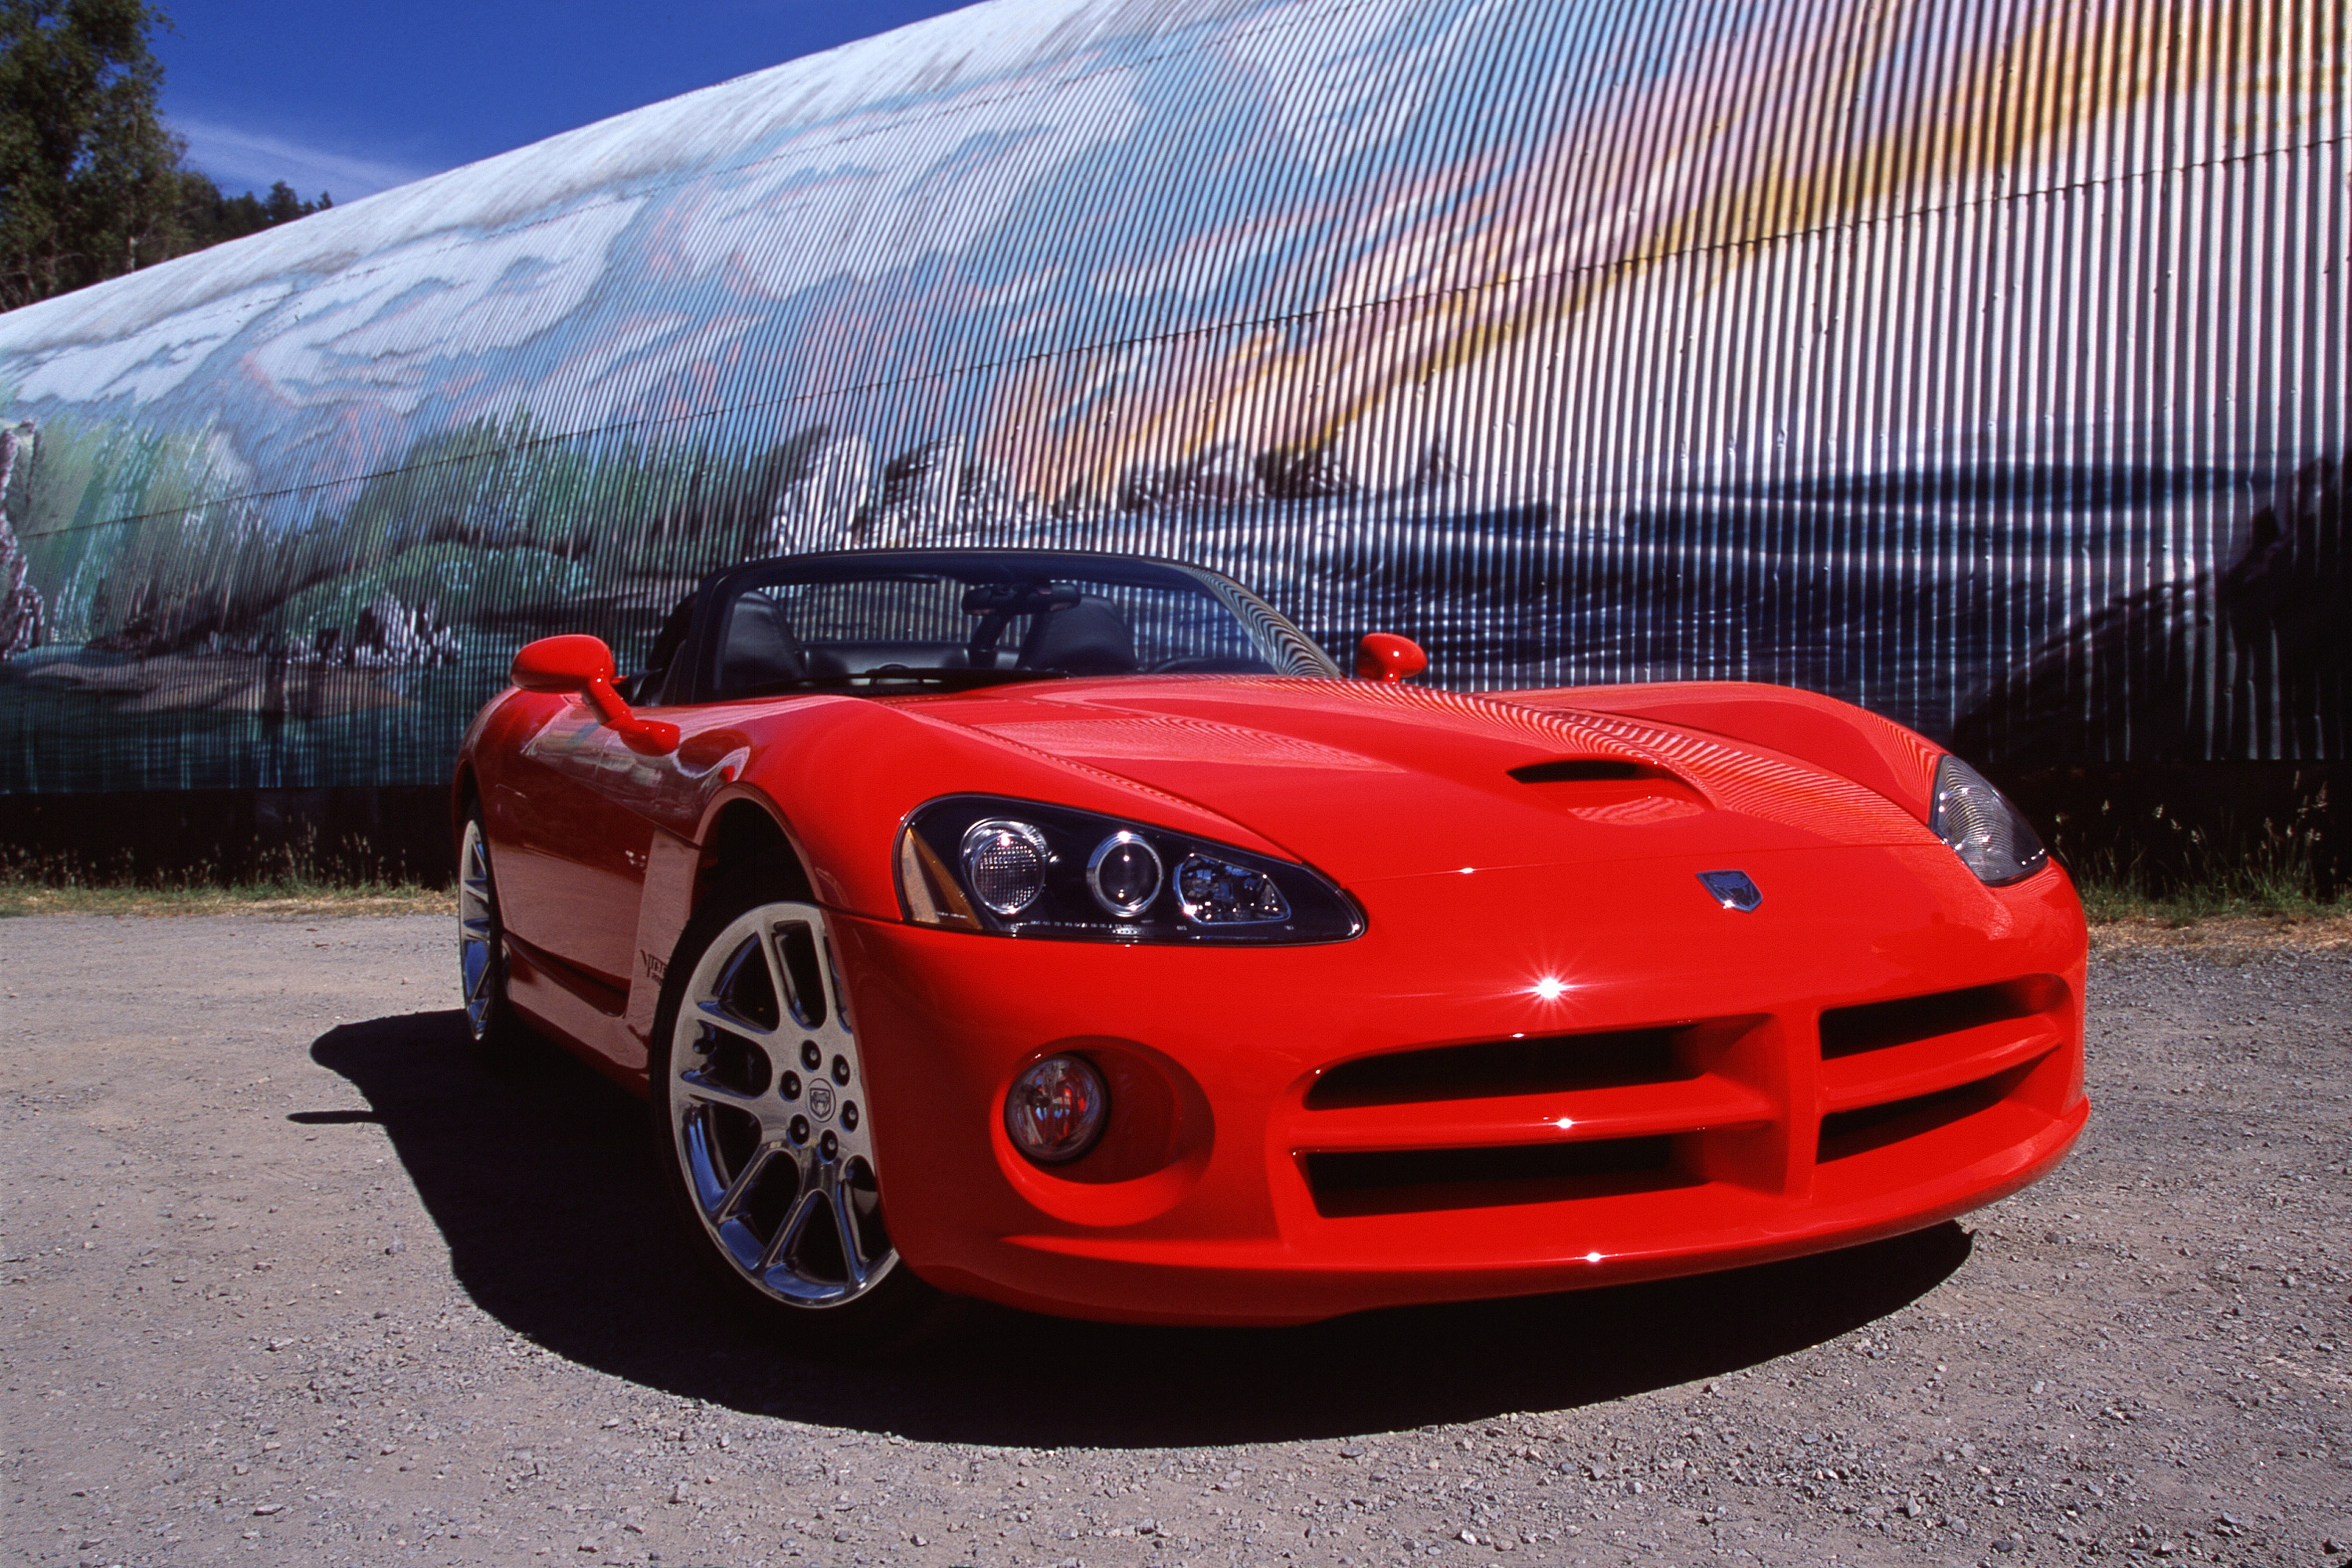  2003 Dodge Viper SRT10 Convertible Wallpaper.